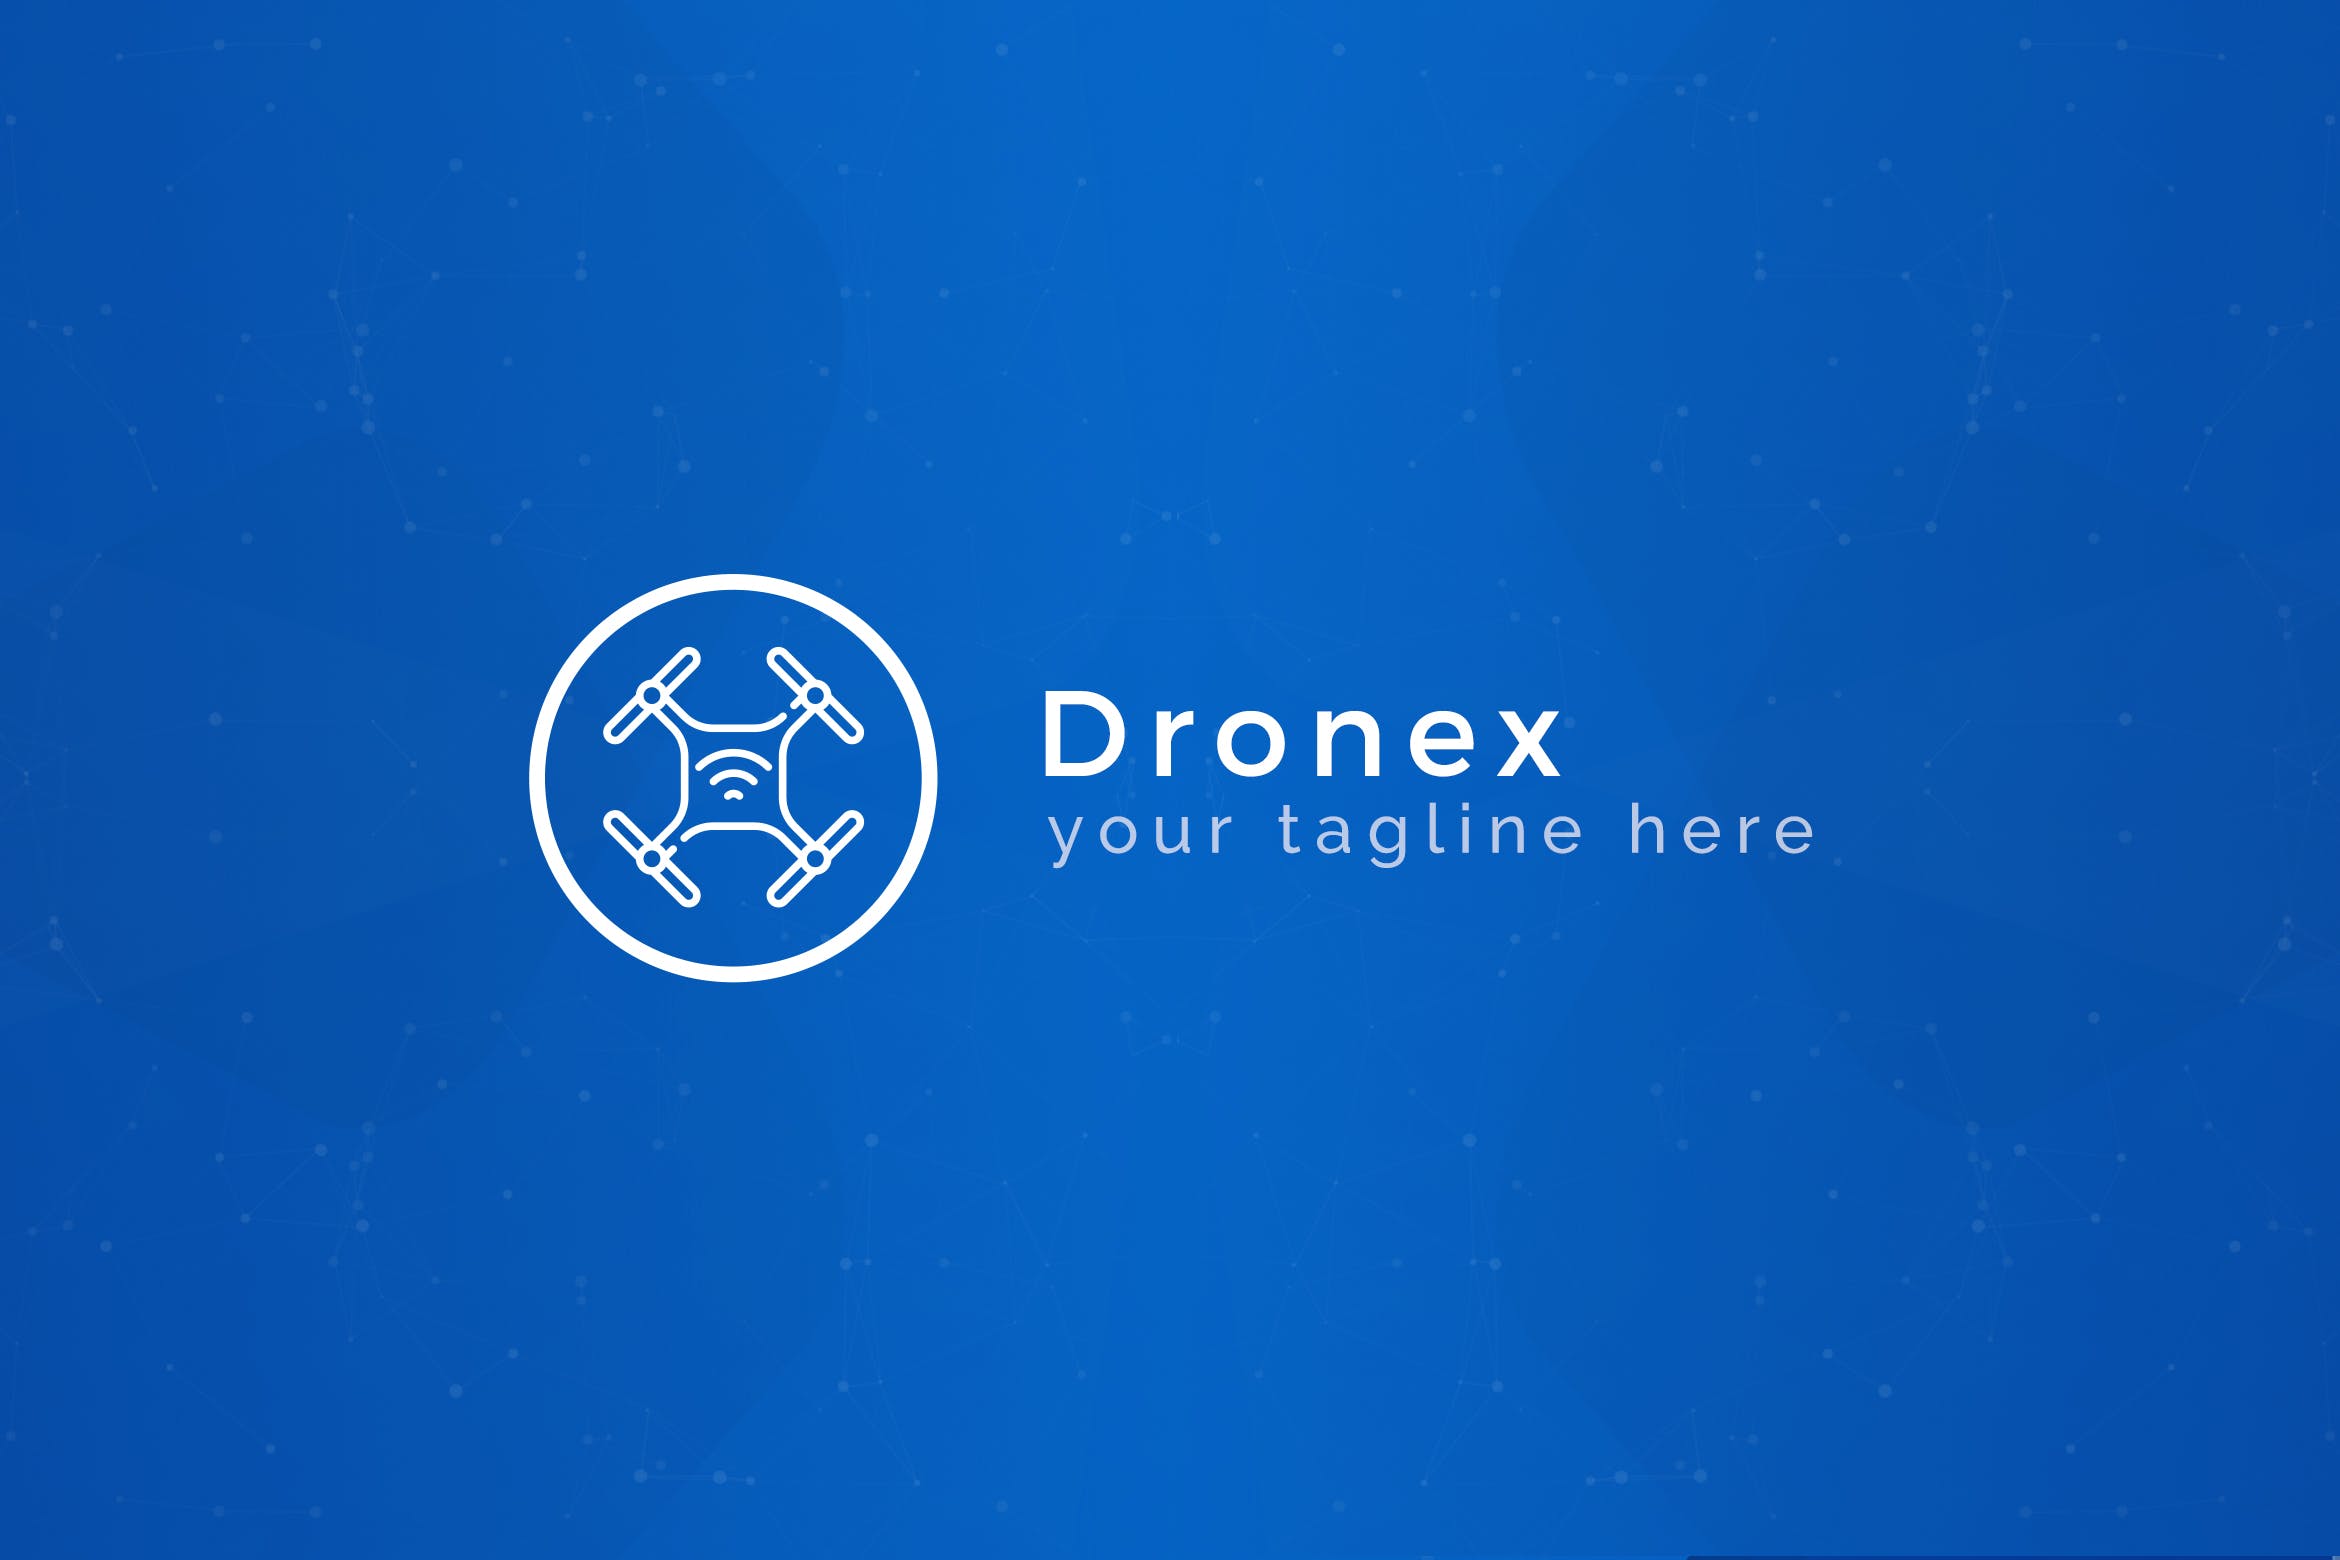 无人机品牌Logo设计蚂蚁素材精选模板 Dronex – Premium Drone Logo Template插图